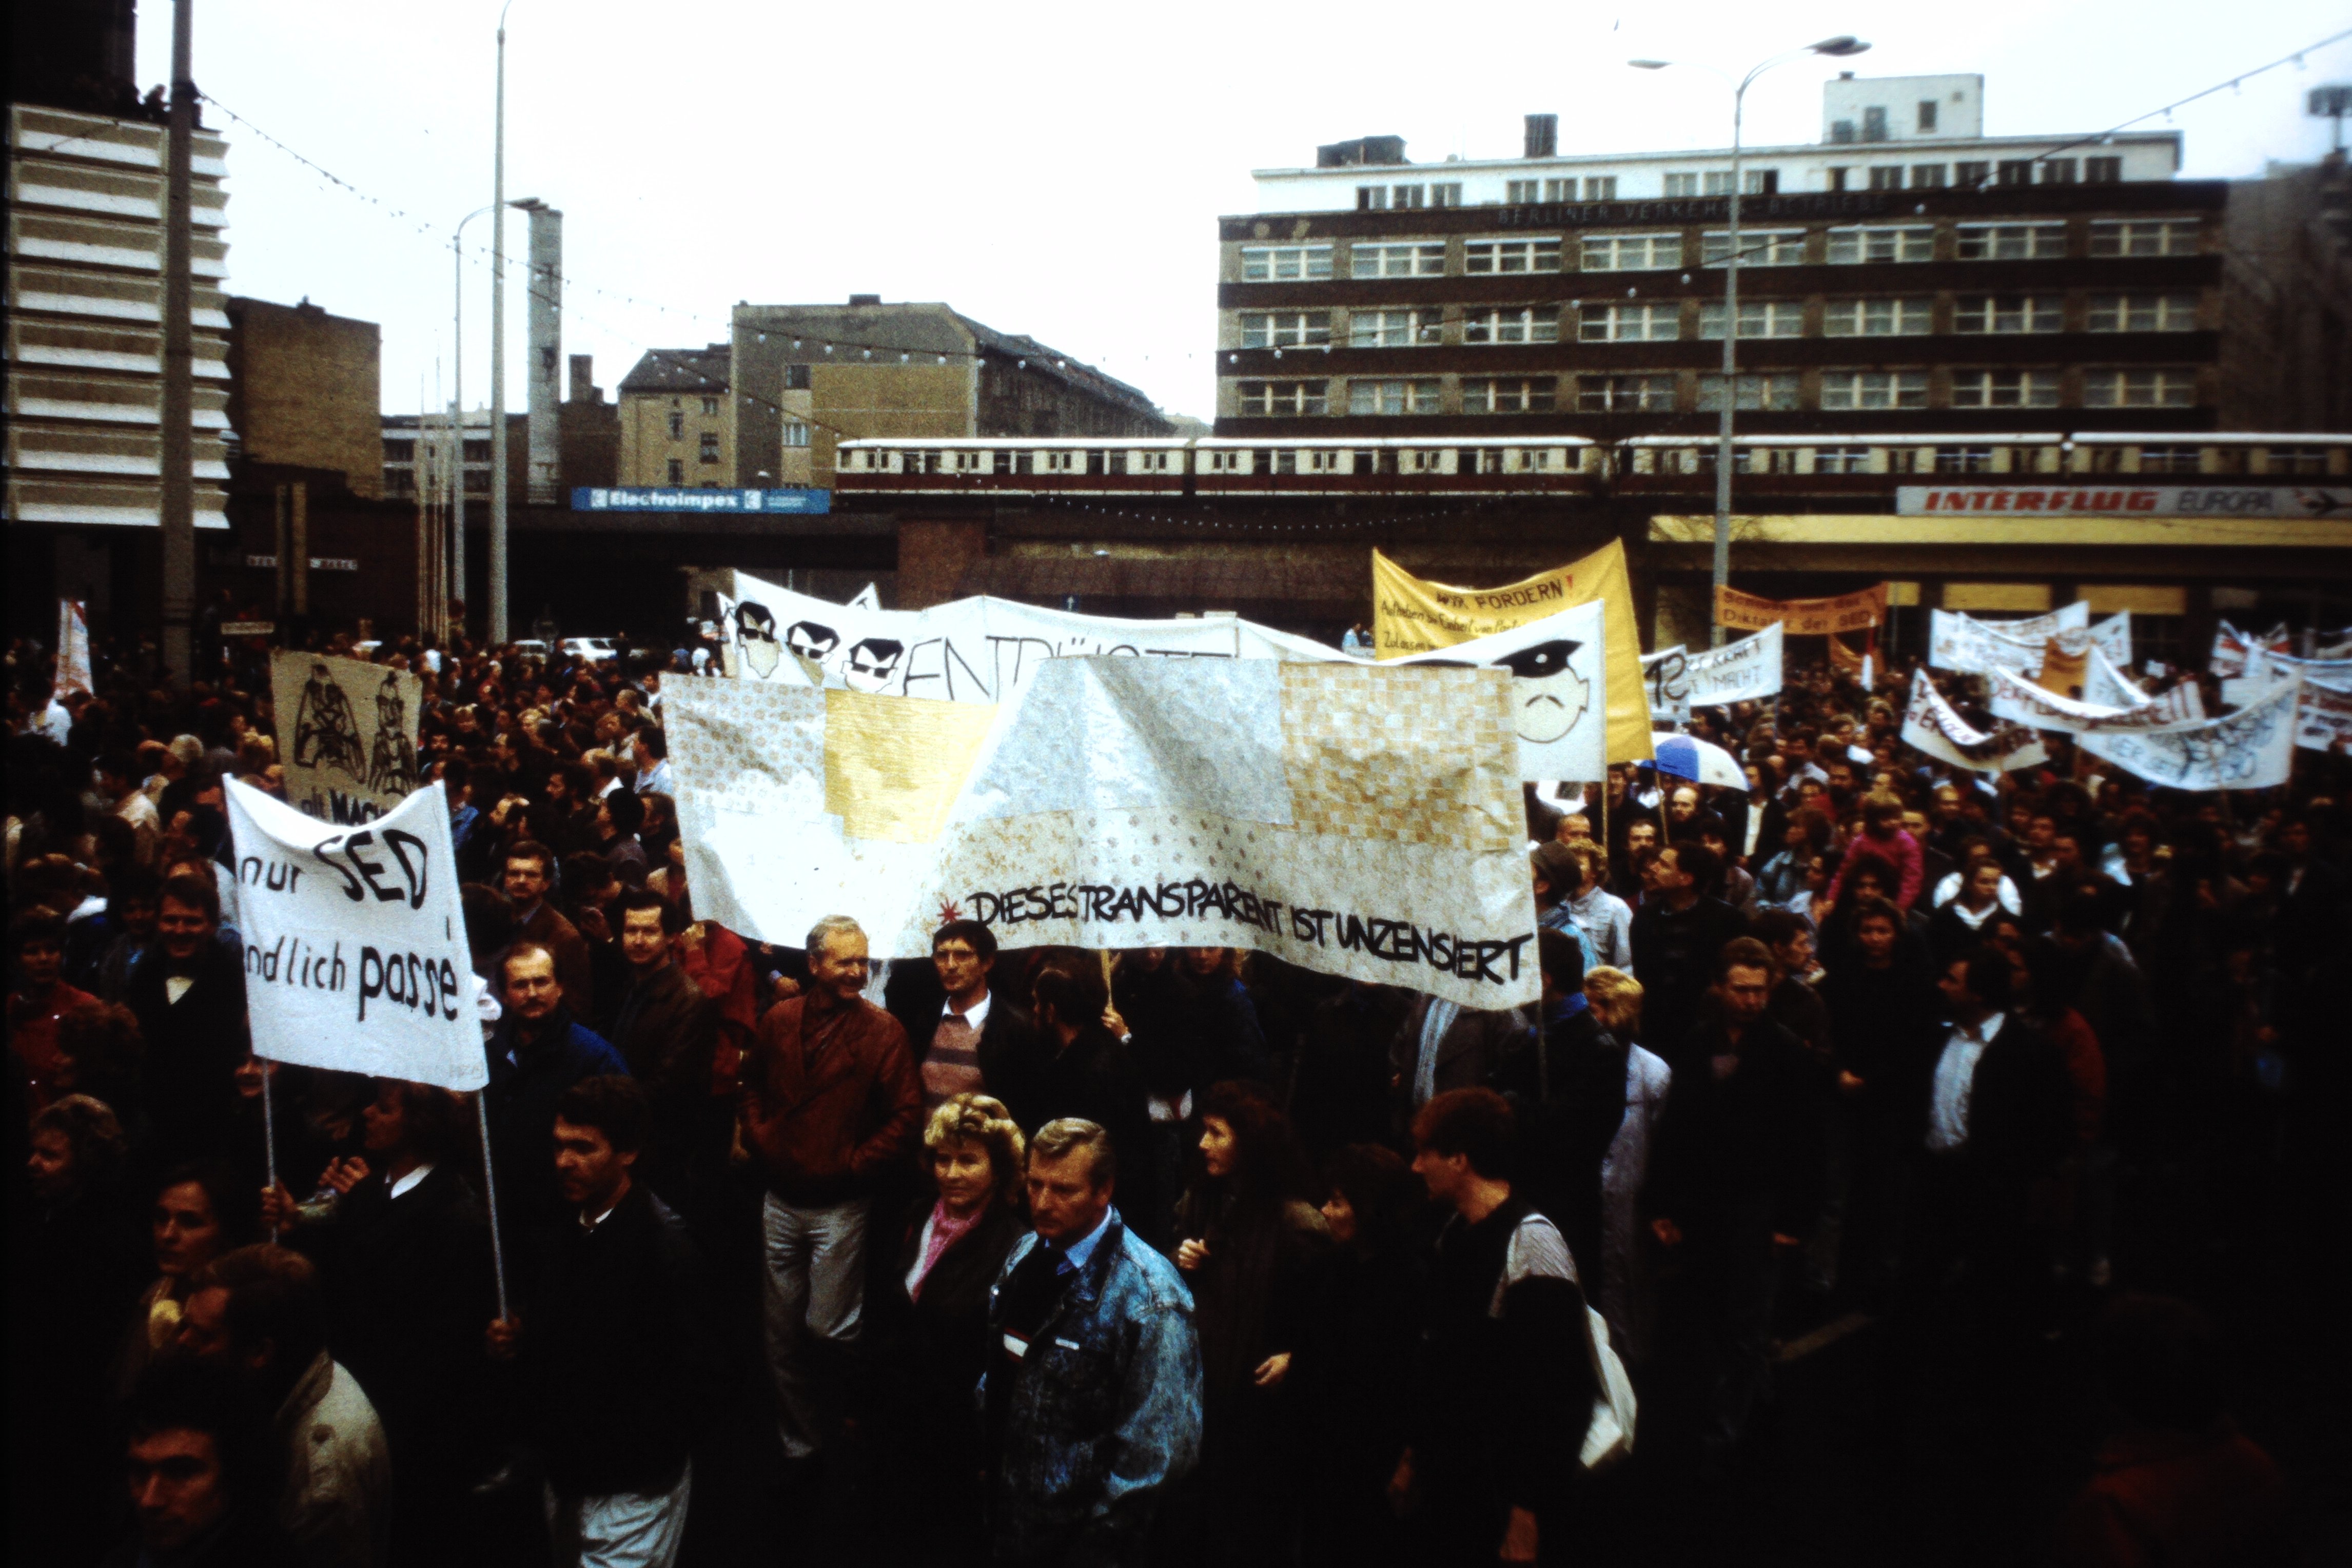 Großdemonstration in Ost-Berlin am 04. November 1989: Demonstranten vor der Markthalle in der Karl-Liebknecht-Straße (DDR Geschichtsmuseum im Dokumentationszentrum Perleberg CC BY-SA)